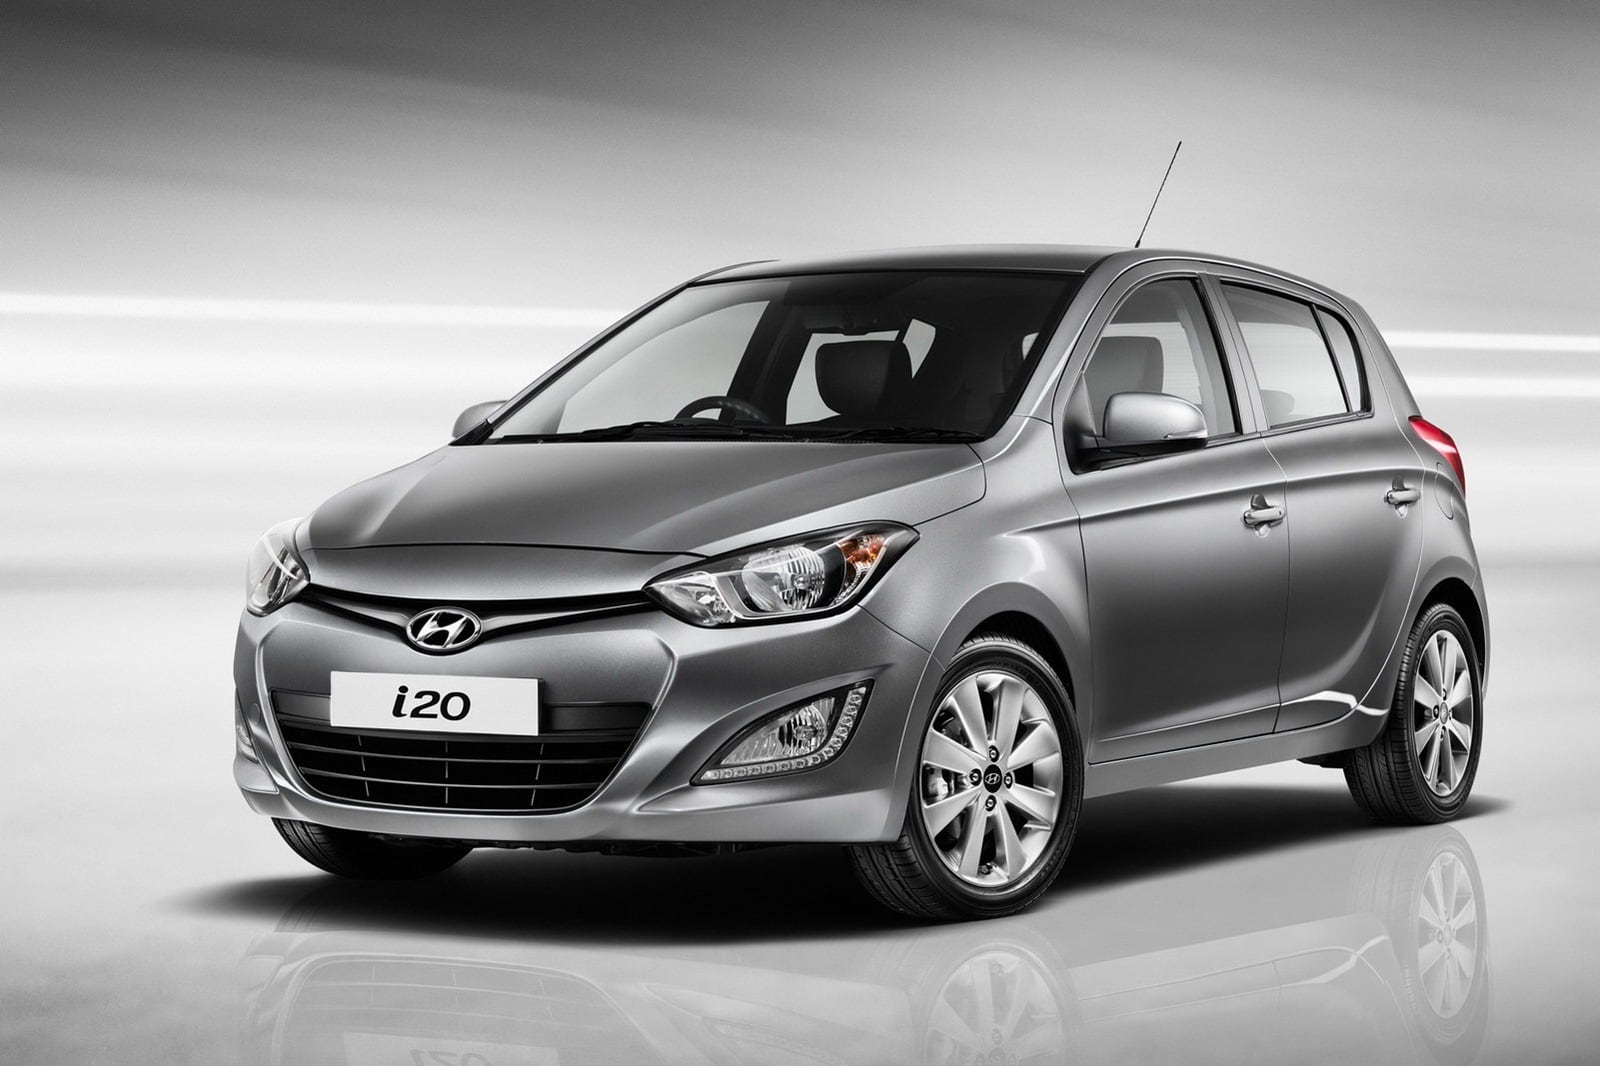 «Хендэ Мотор СНГ» совместно с Русфинанс Банком проводит акцию на новые автомобили Hyundai i20